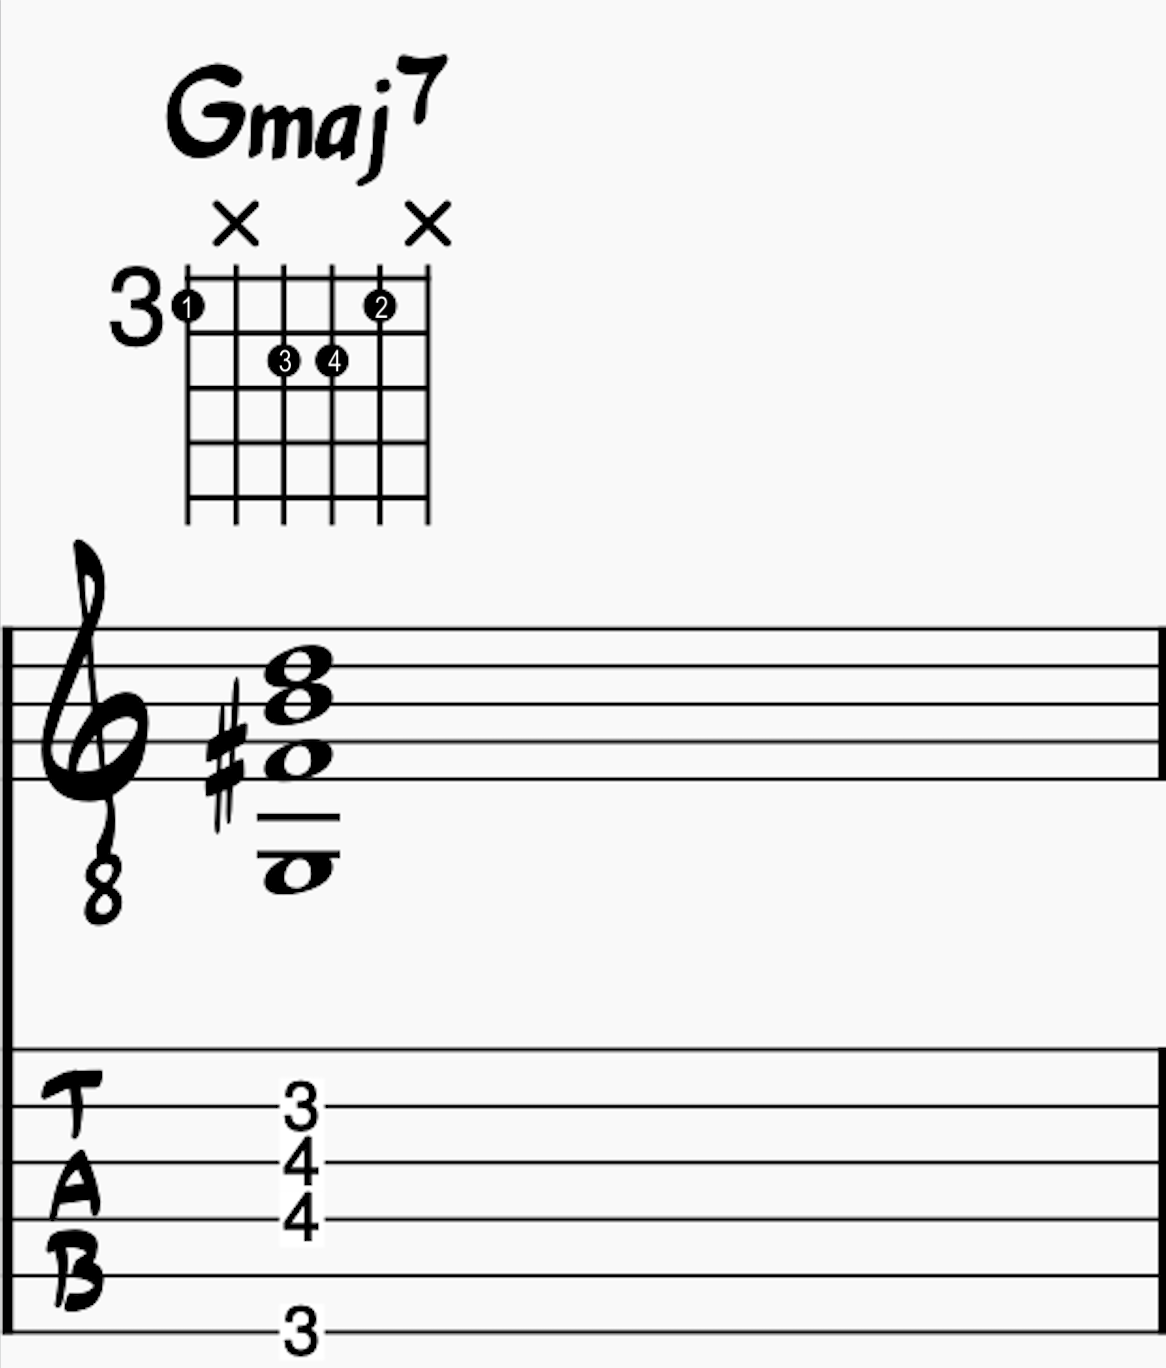 Gmaj7 Chord on Low E string, D string, G string, and B string